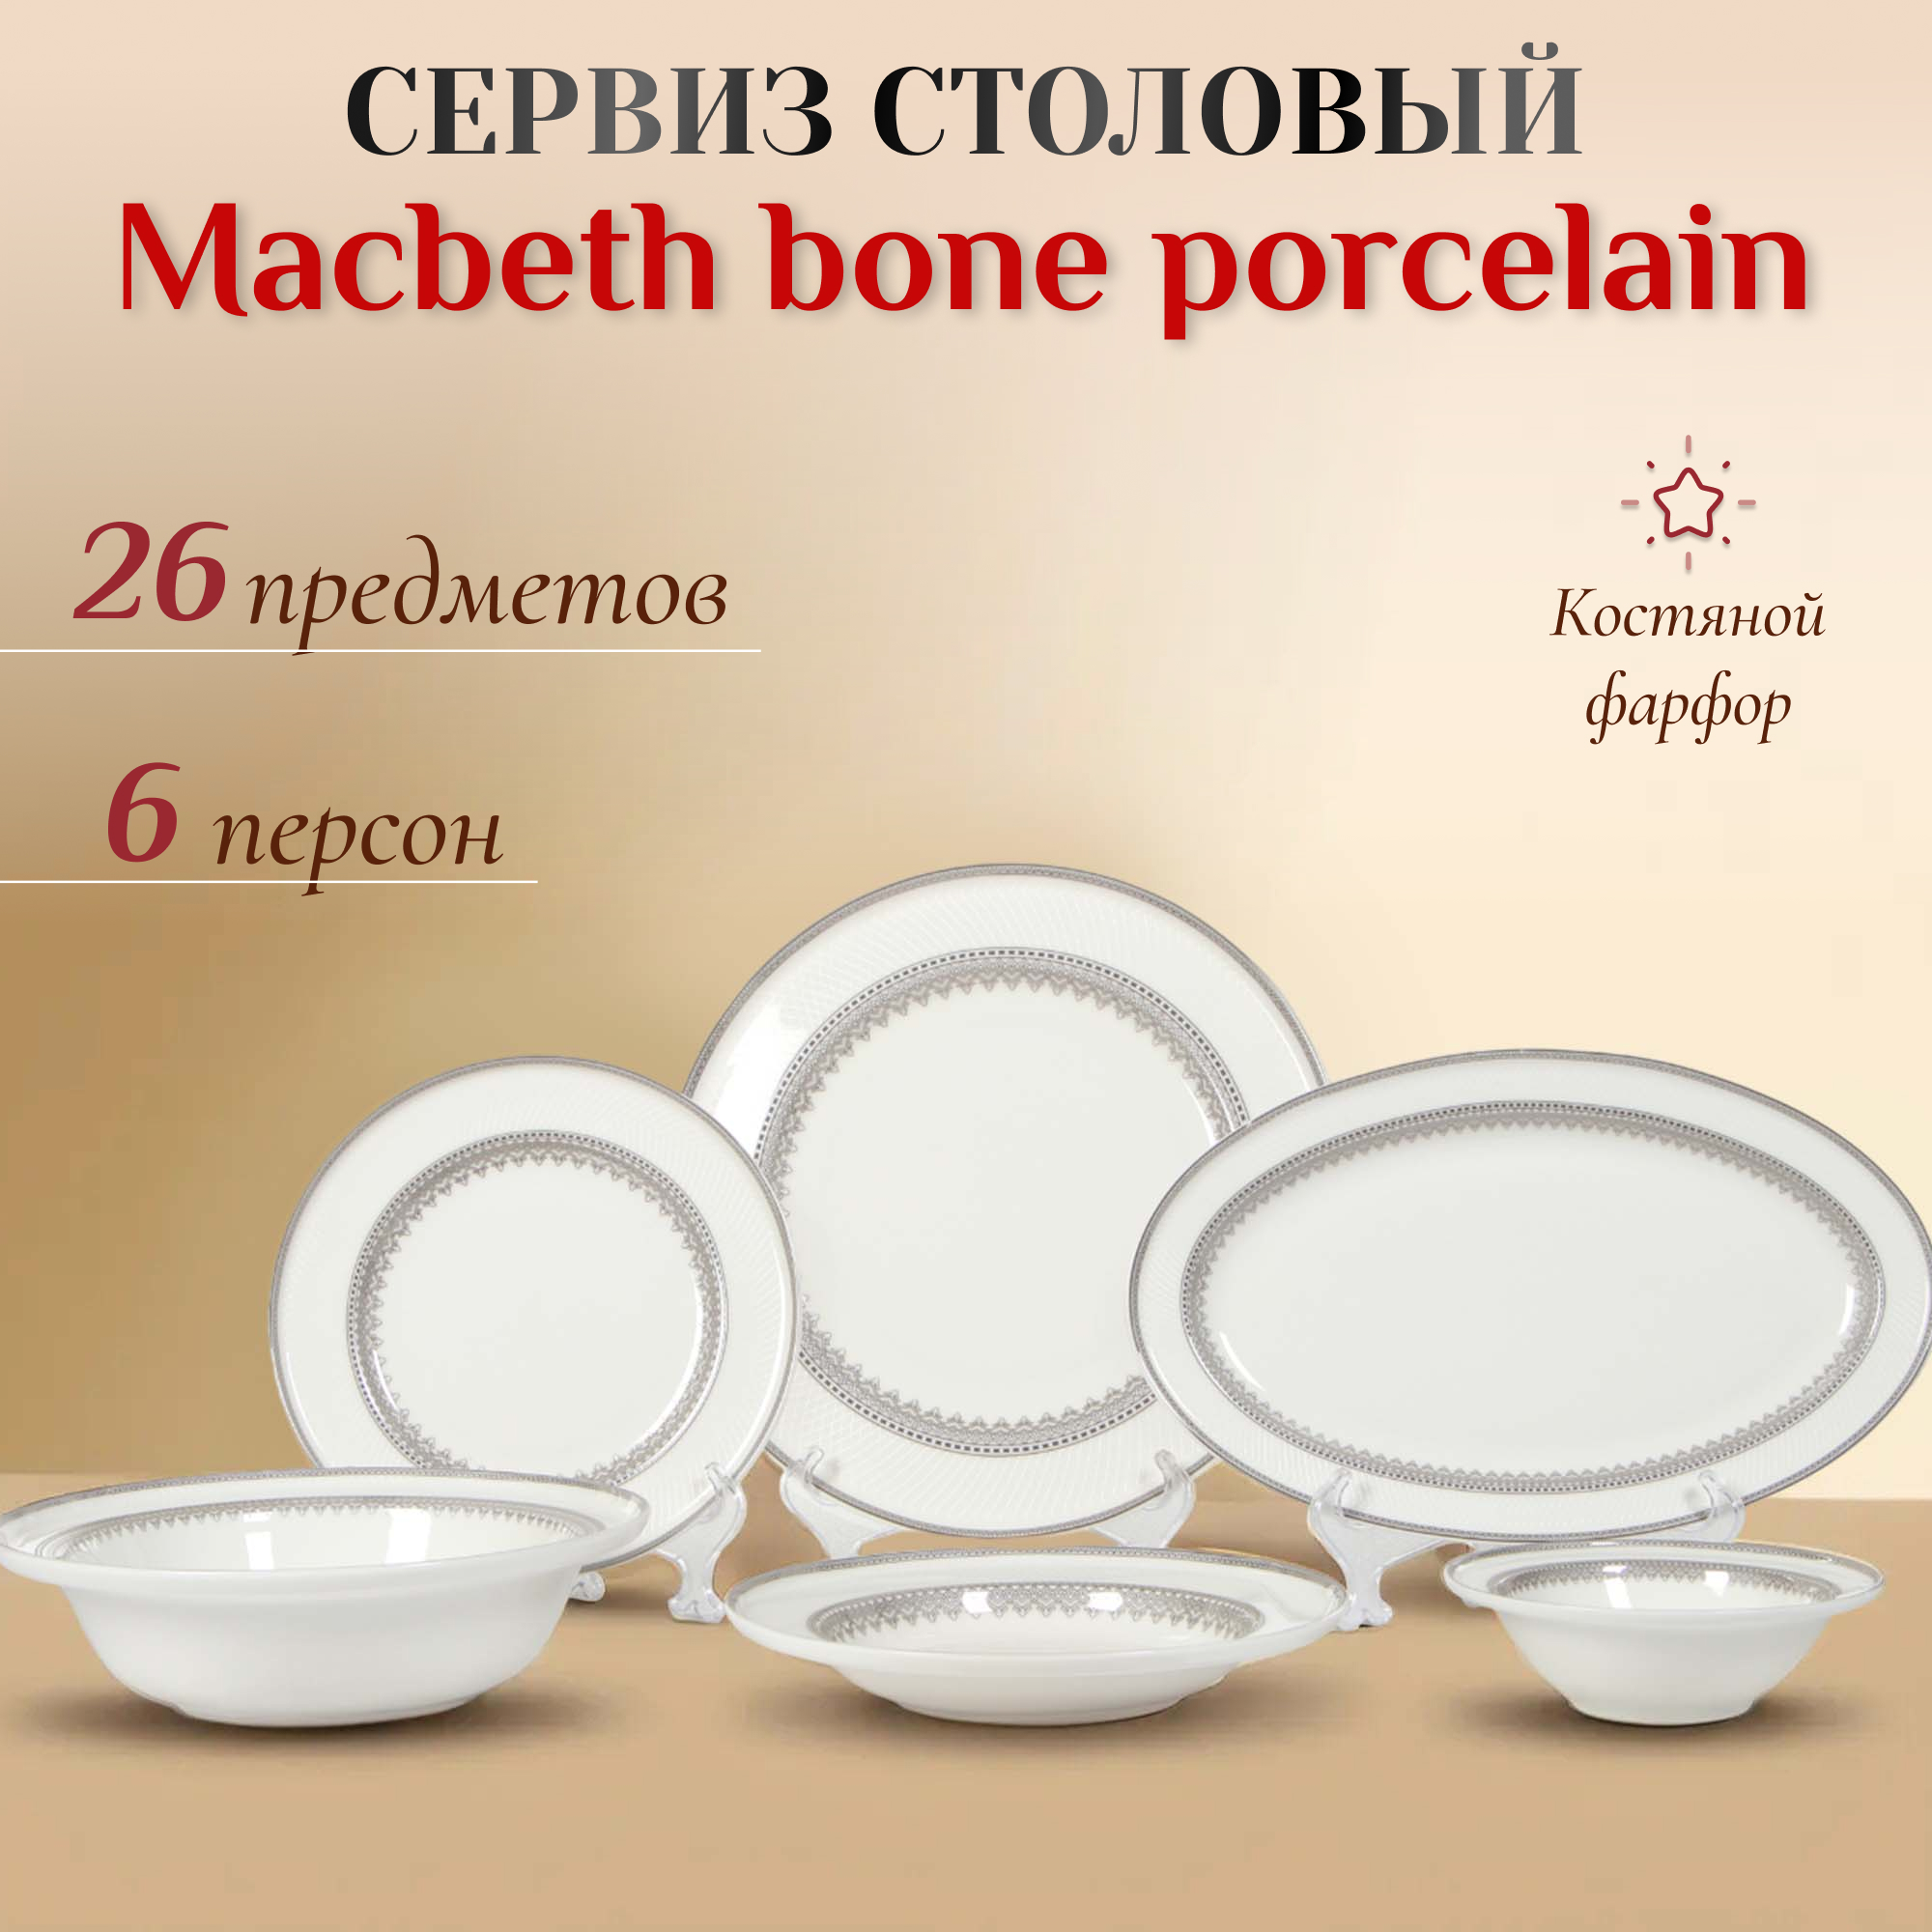 Сервиз столовый Macbeth bone porcelain Delight 26 предметов 6 персон, цвет белый - фото 2